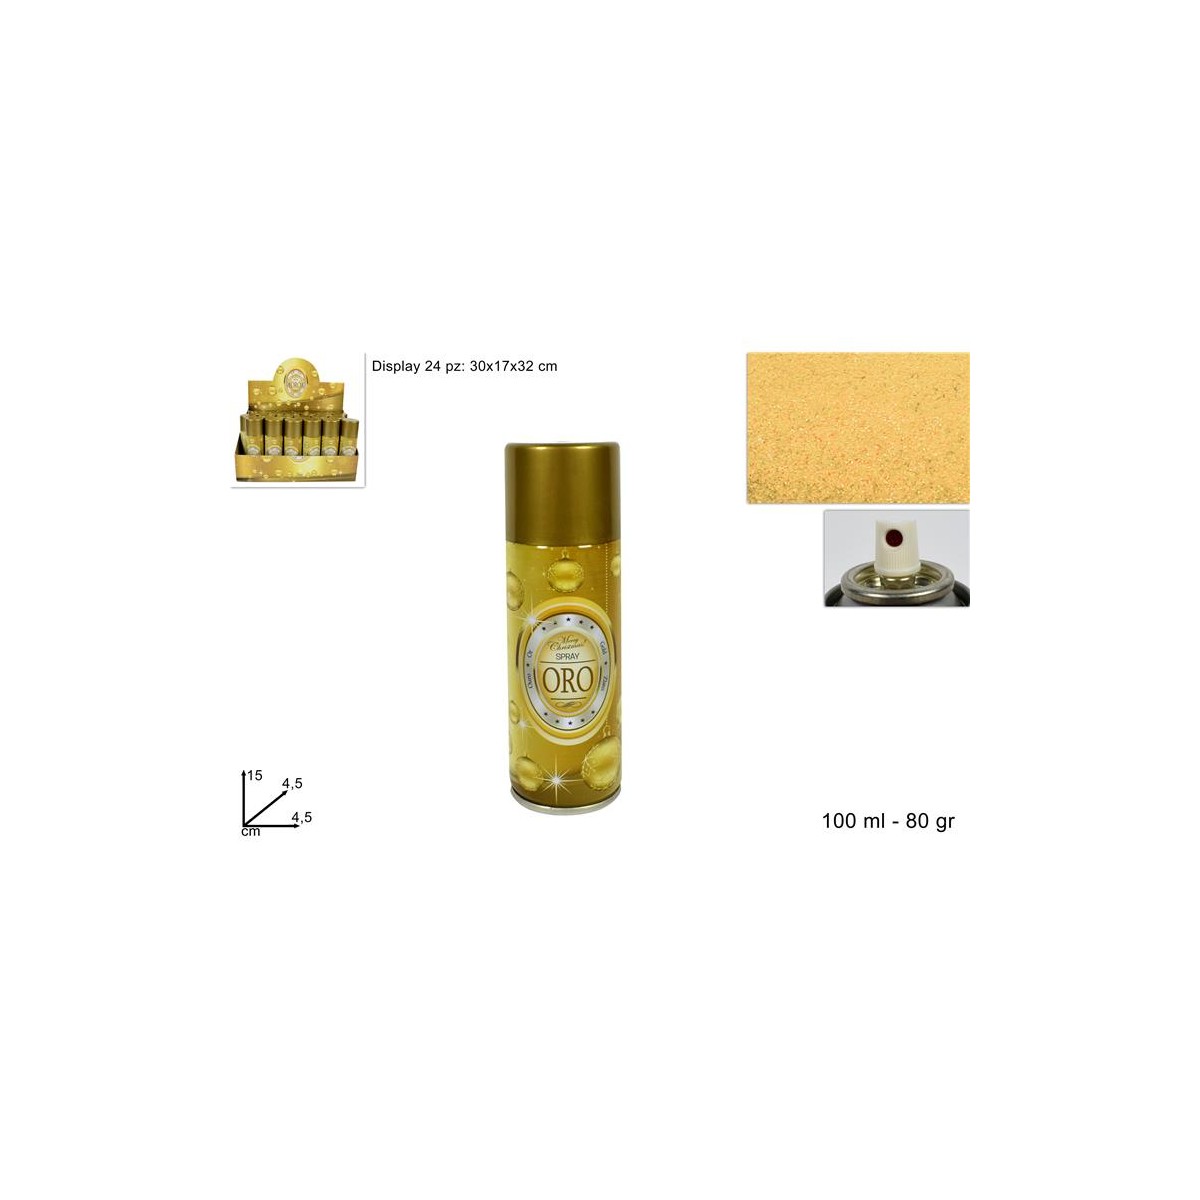 Bomboletta spray oro ml.150 - Cartoarte - La cartoleria a portata di click